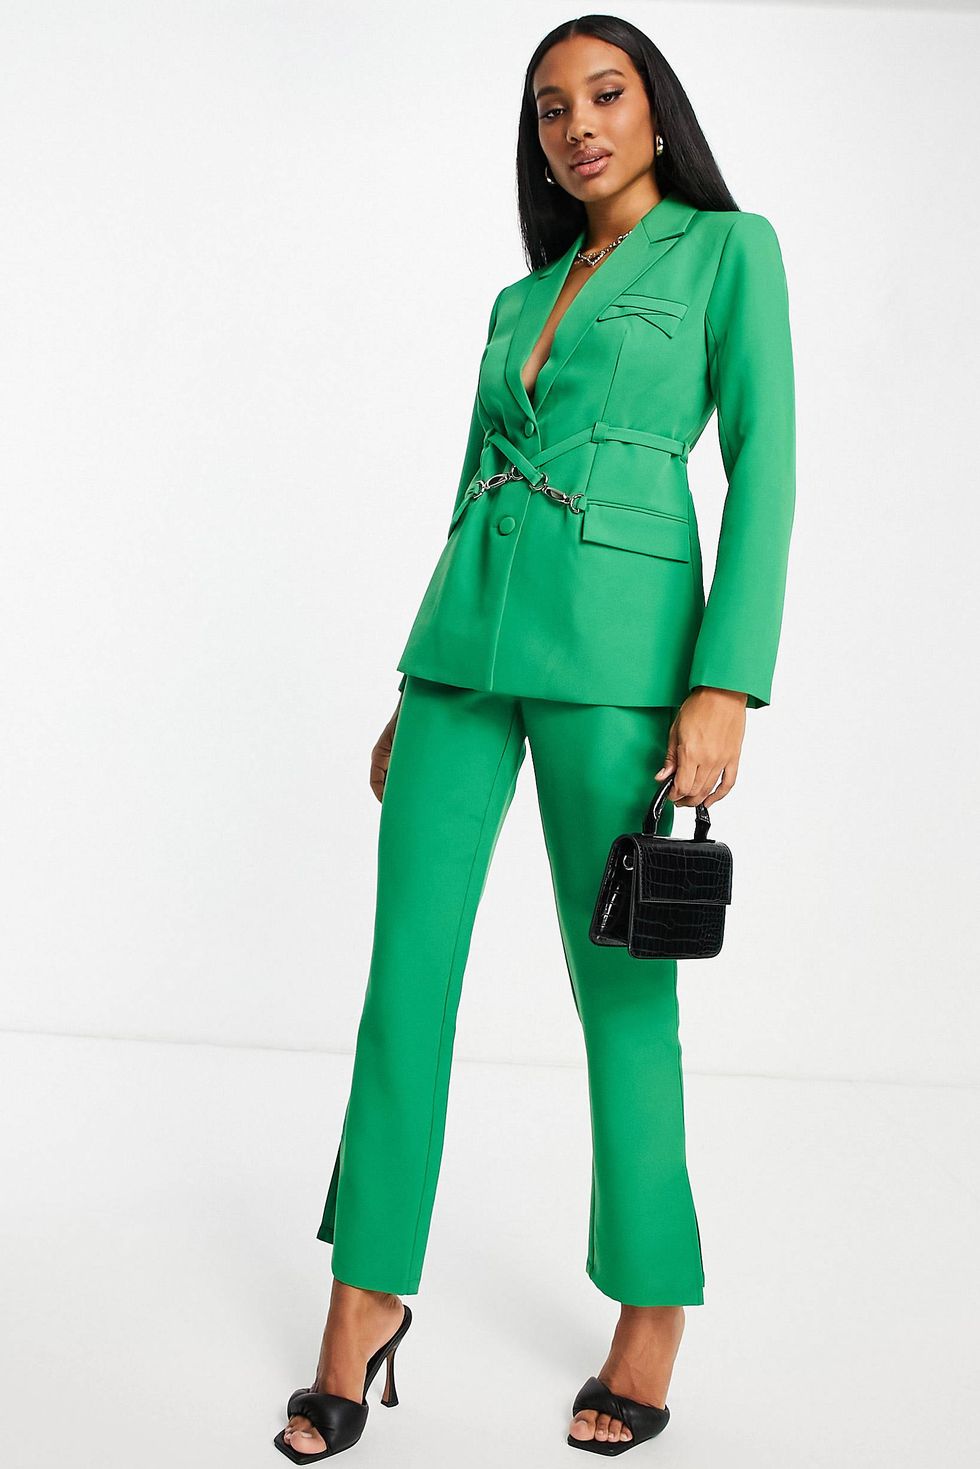 GREEN VELVET SUIT for Women/ Women Pant Suit/womens Suit/women Pant Suit/business  Suit Women/women Tailored Suit/womens Coats Suit Set/ -  India